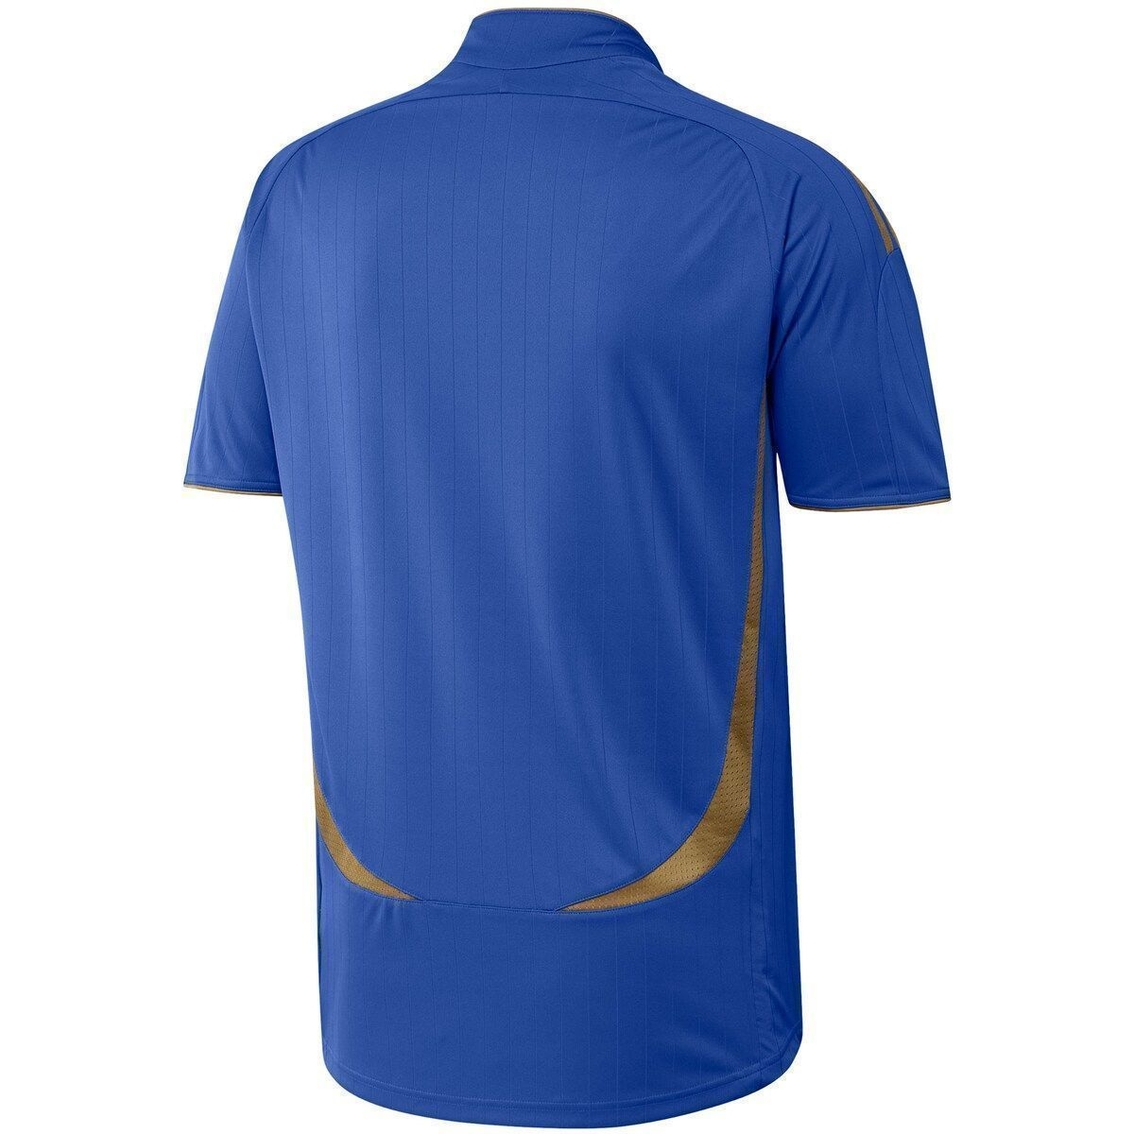 Men's adidas Blue Juventus Teamgeist Jersey - Image 4 of 4